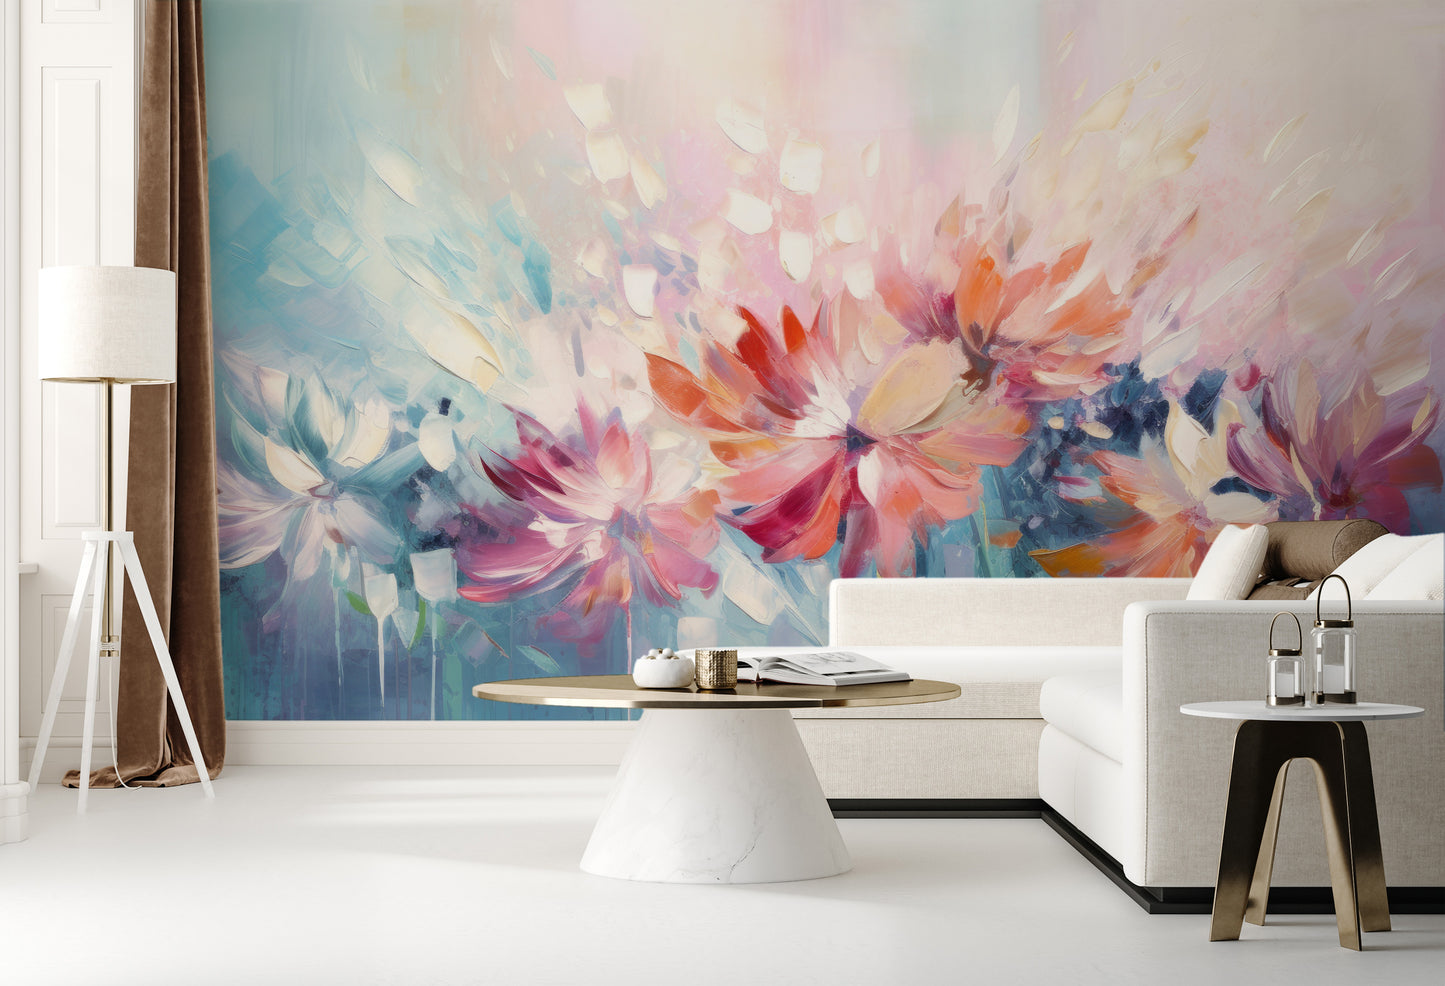 Wzór fototapety artystycznej o nazwie Floral Watercolor Fantasy pokazanej w aranżacji wnętrza.